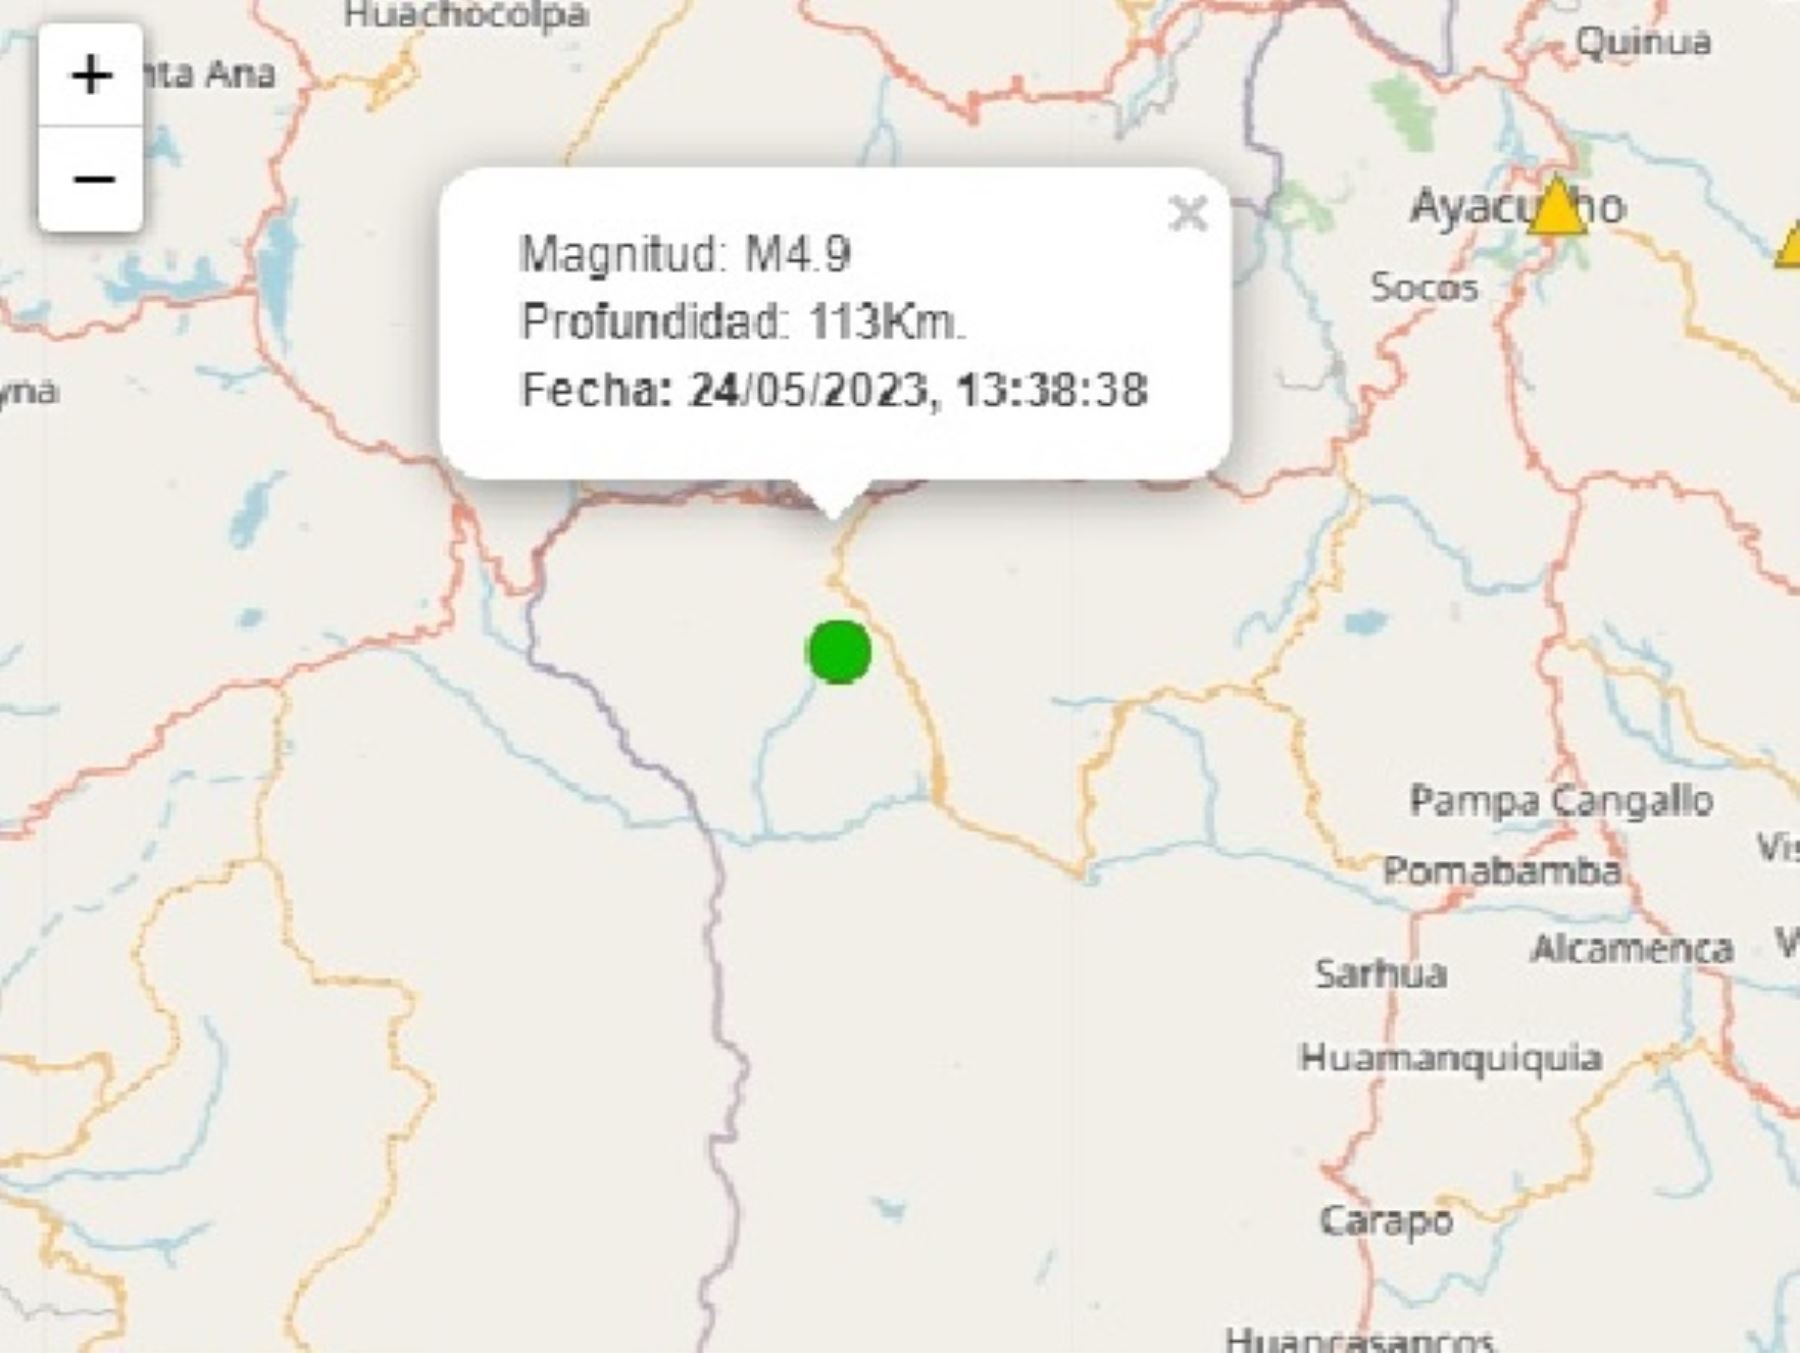 Temblor de magnitud 4.9 remeció esta tarde la región Ayacucho